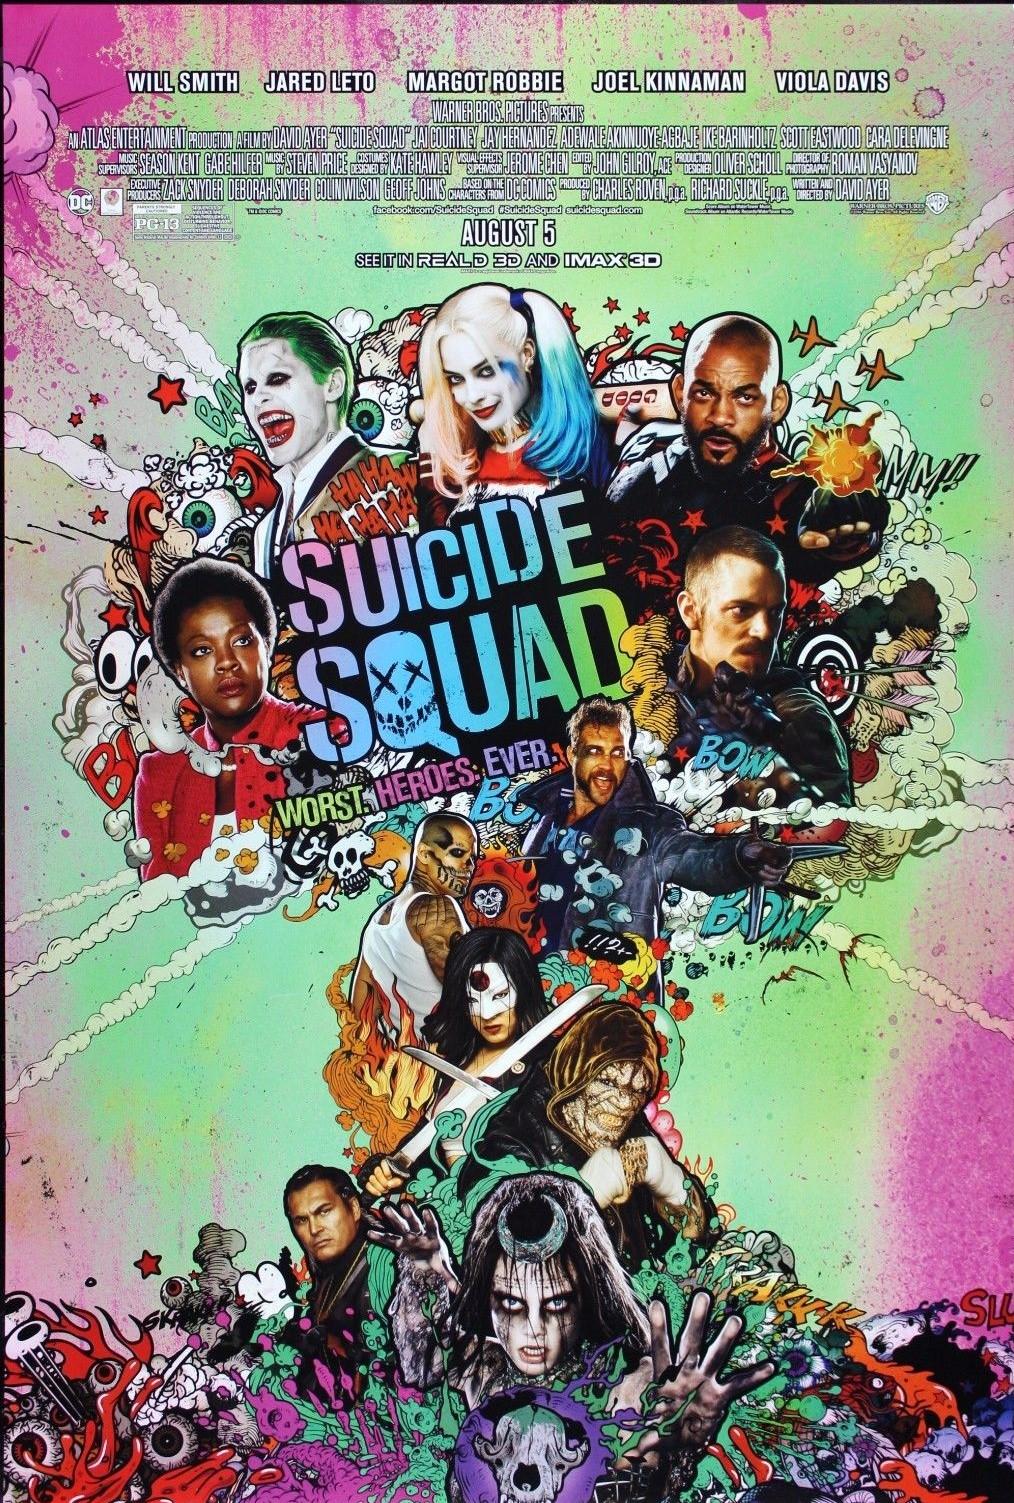 بوستر فيلم Suicide Squad